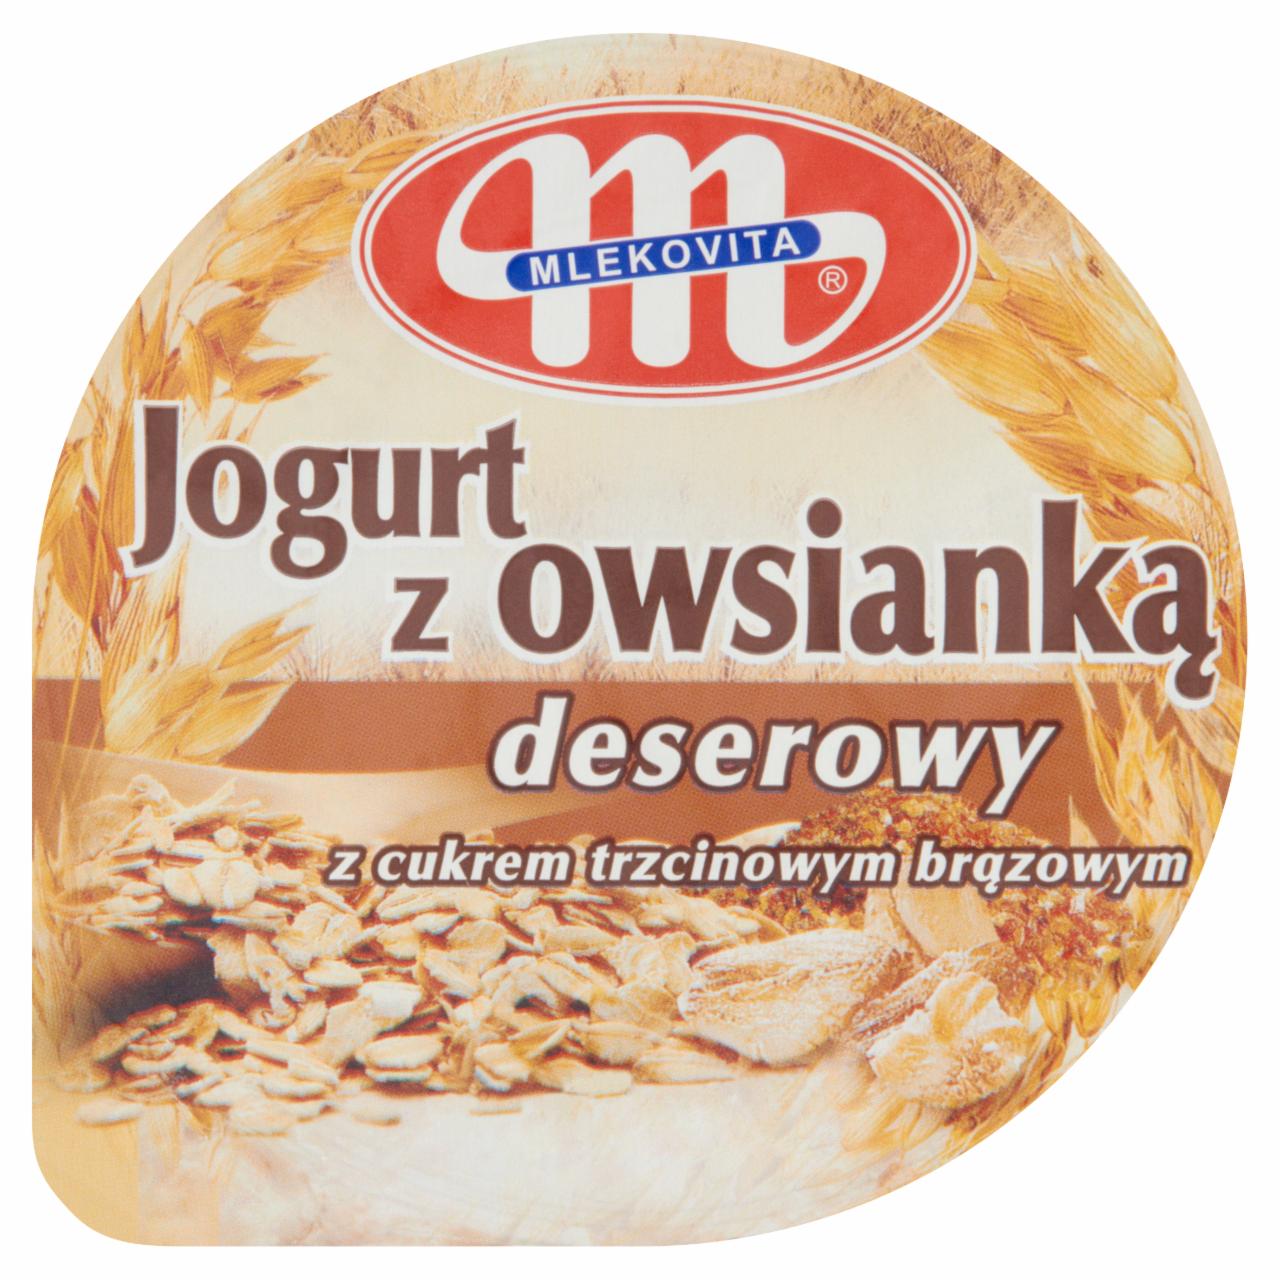 Zdjęcia - Mlekovita Jogurt z owsianką deserowy 180 g